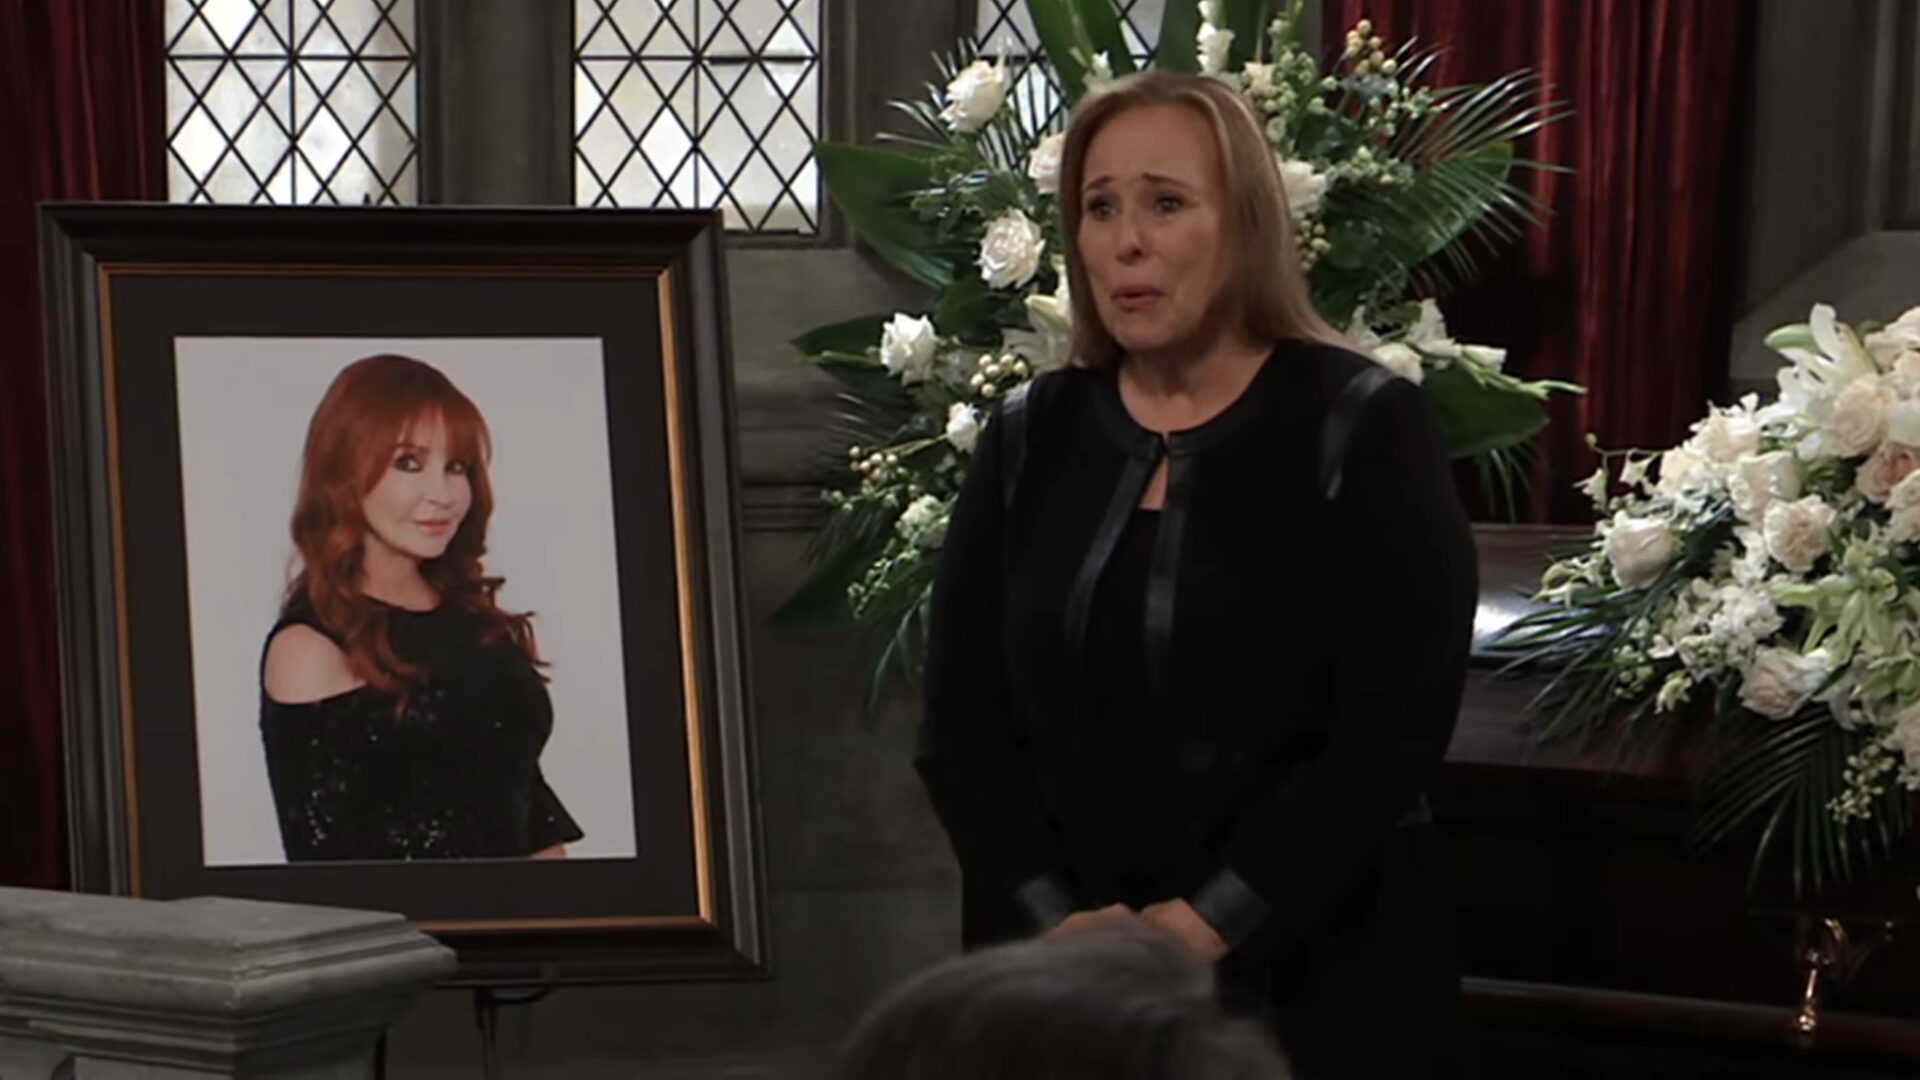 laura speaks at bobbie's funeral